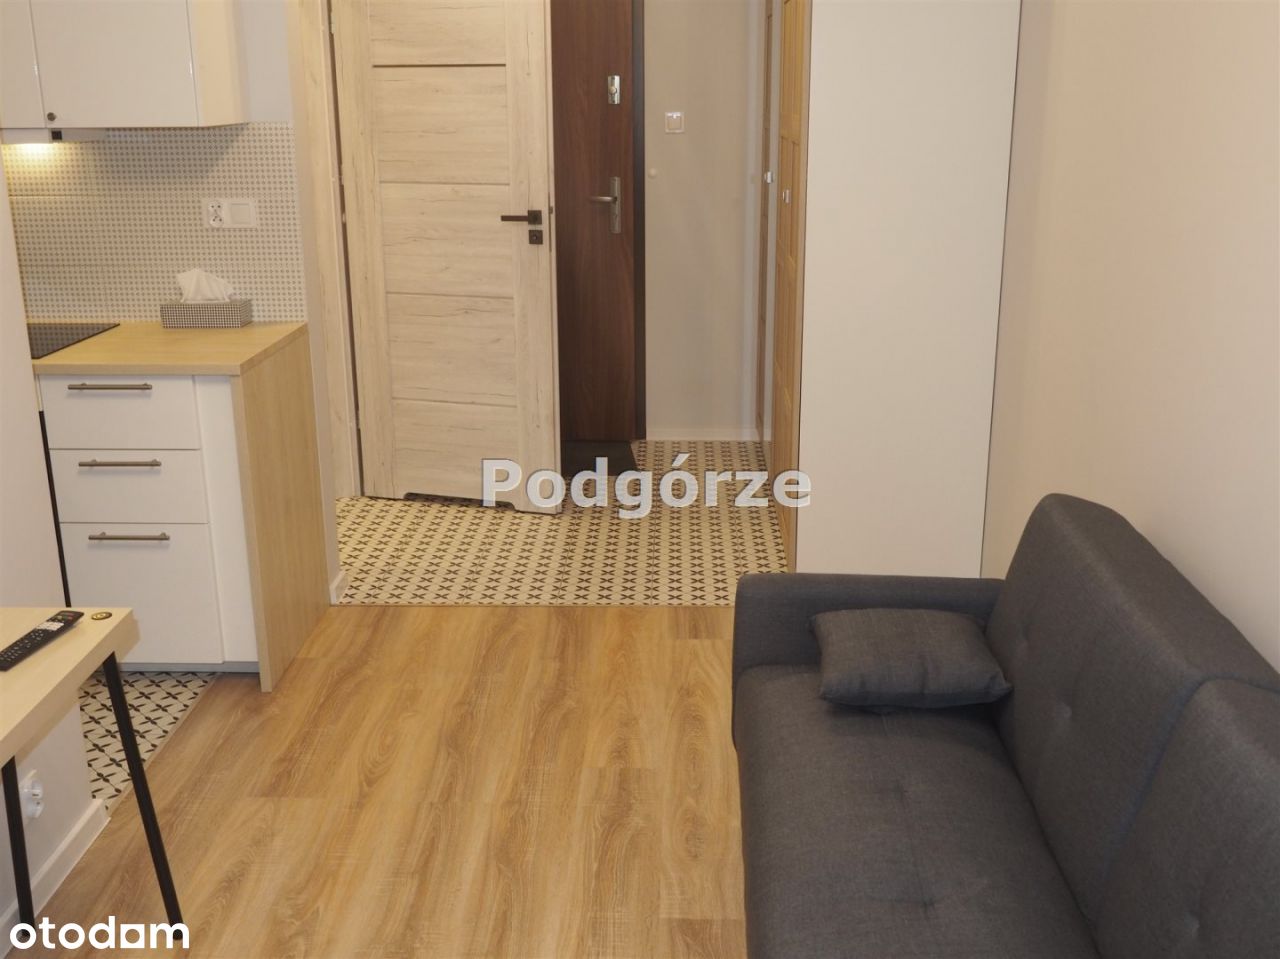 Mieszkanie, 32 m², Kraków